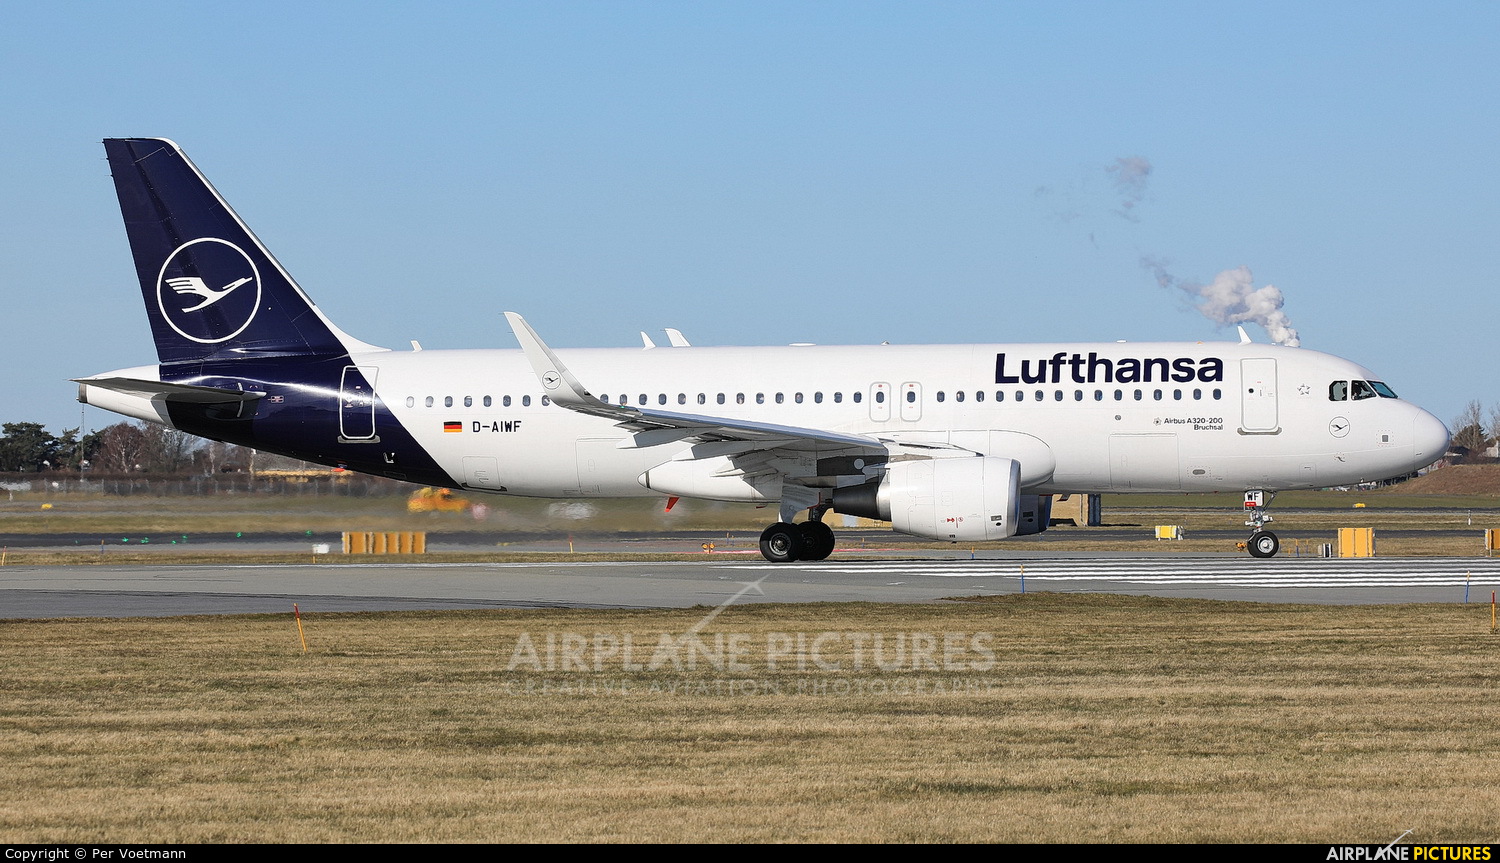 Lufthansa D-AIWF aircraft at Copenhagen Kastrup